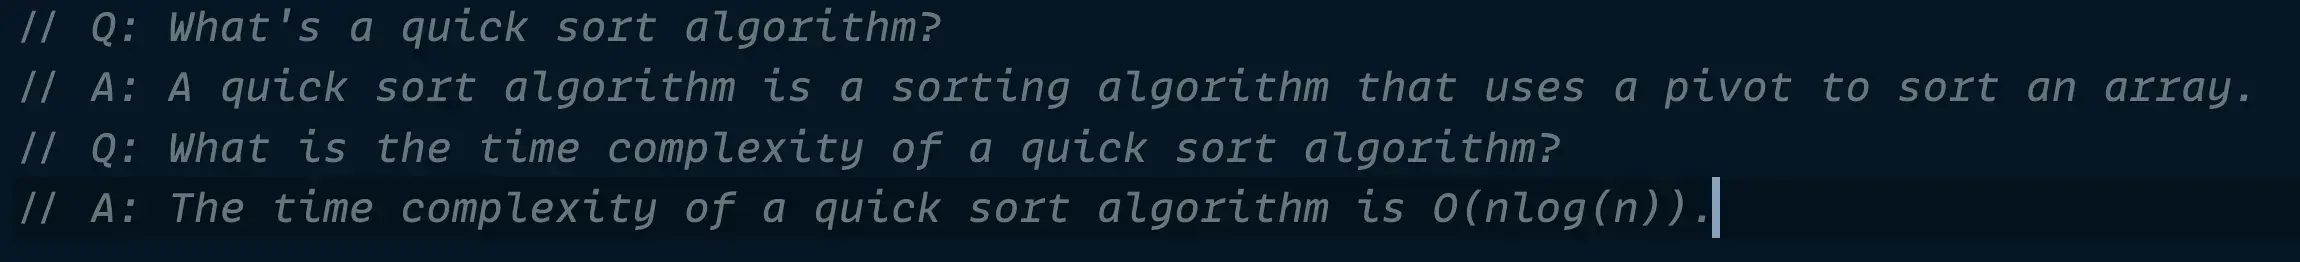 Copilot answers a question about quick sort algorithm